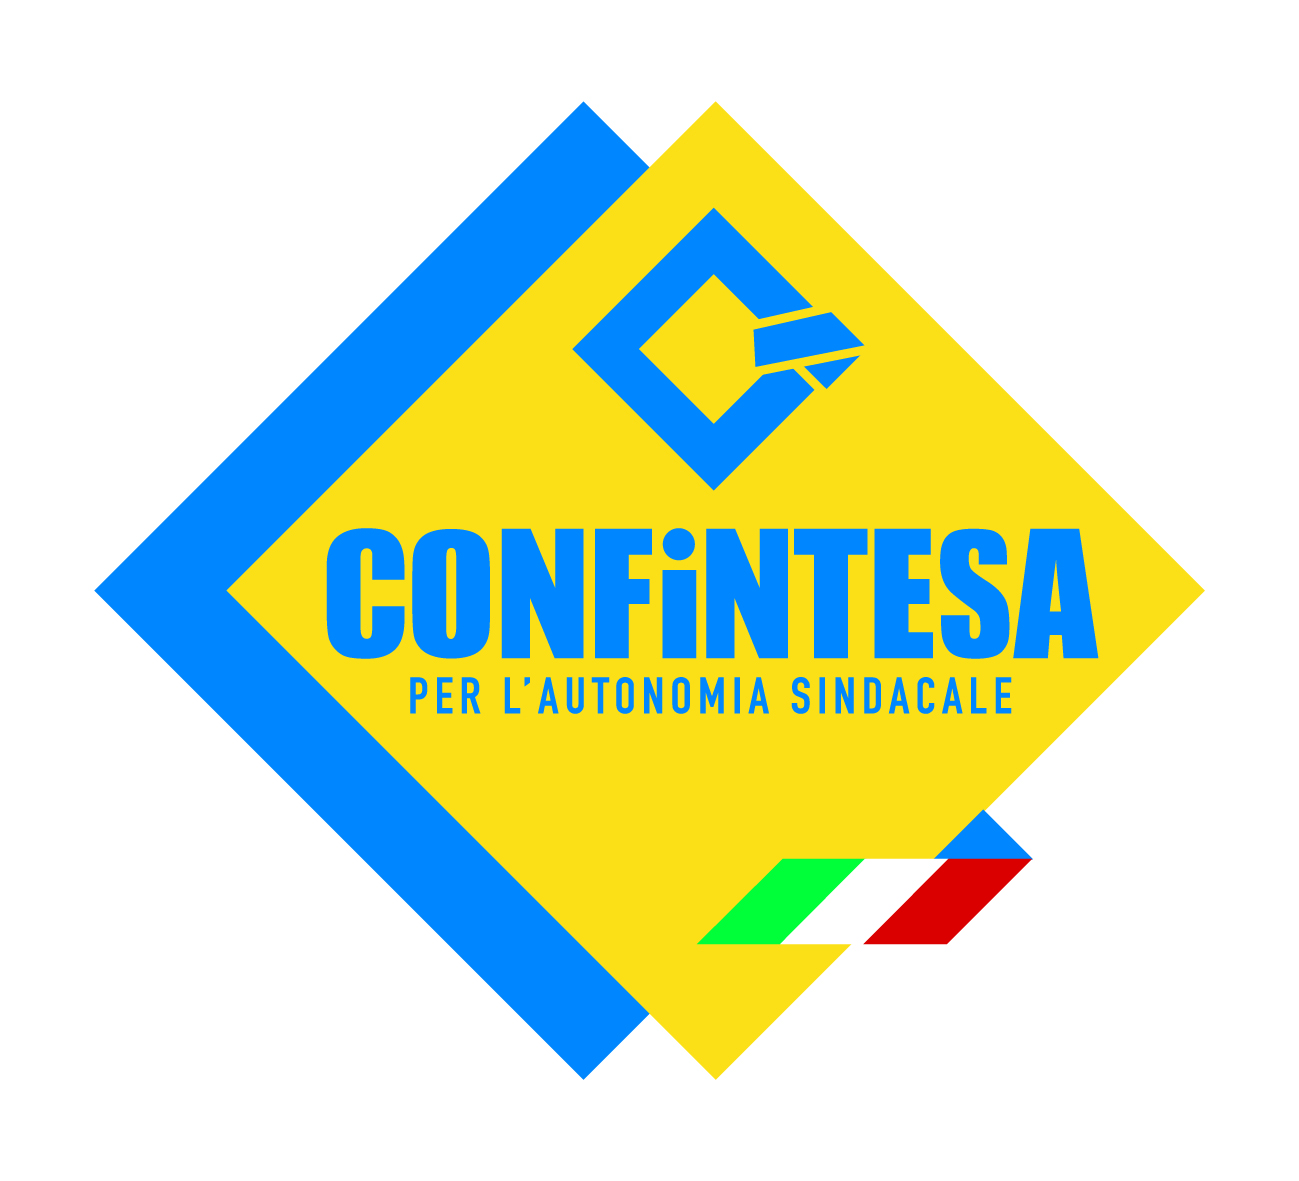 Confintesa Toscana: Con noi per un sindacato dinamico ed alternativo che valuti l’esperienza ed il merito